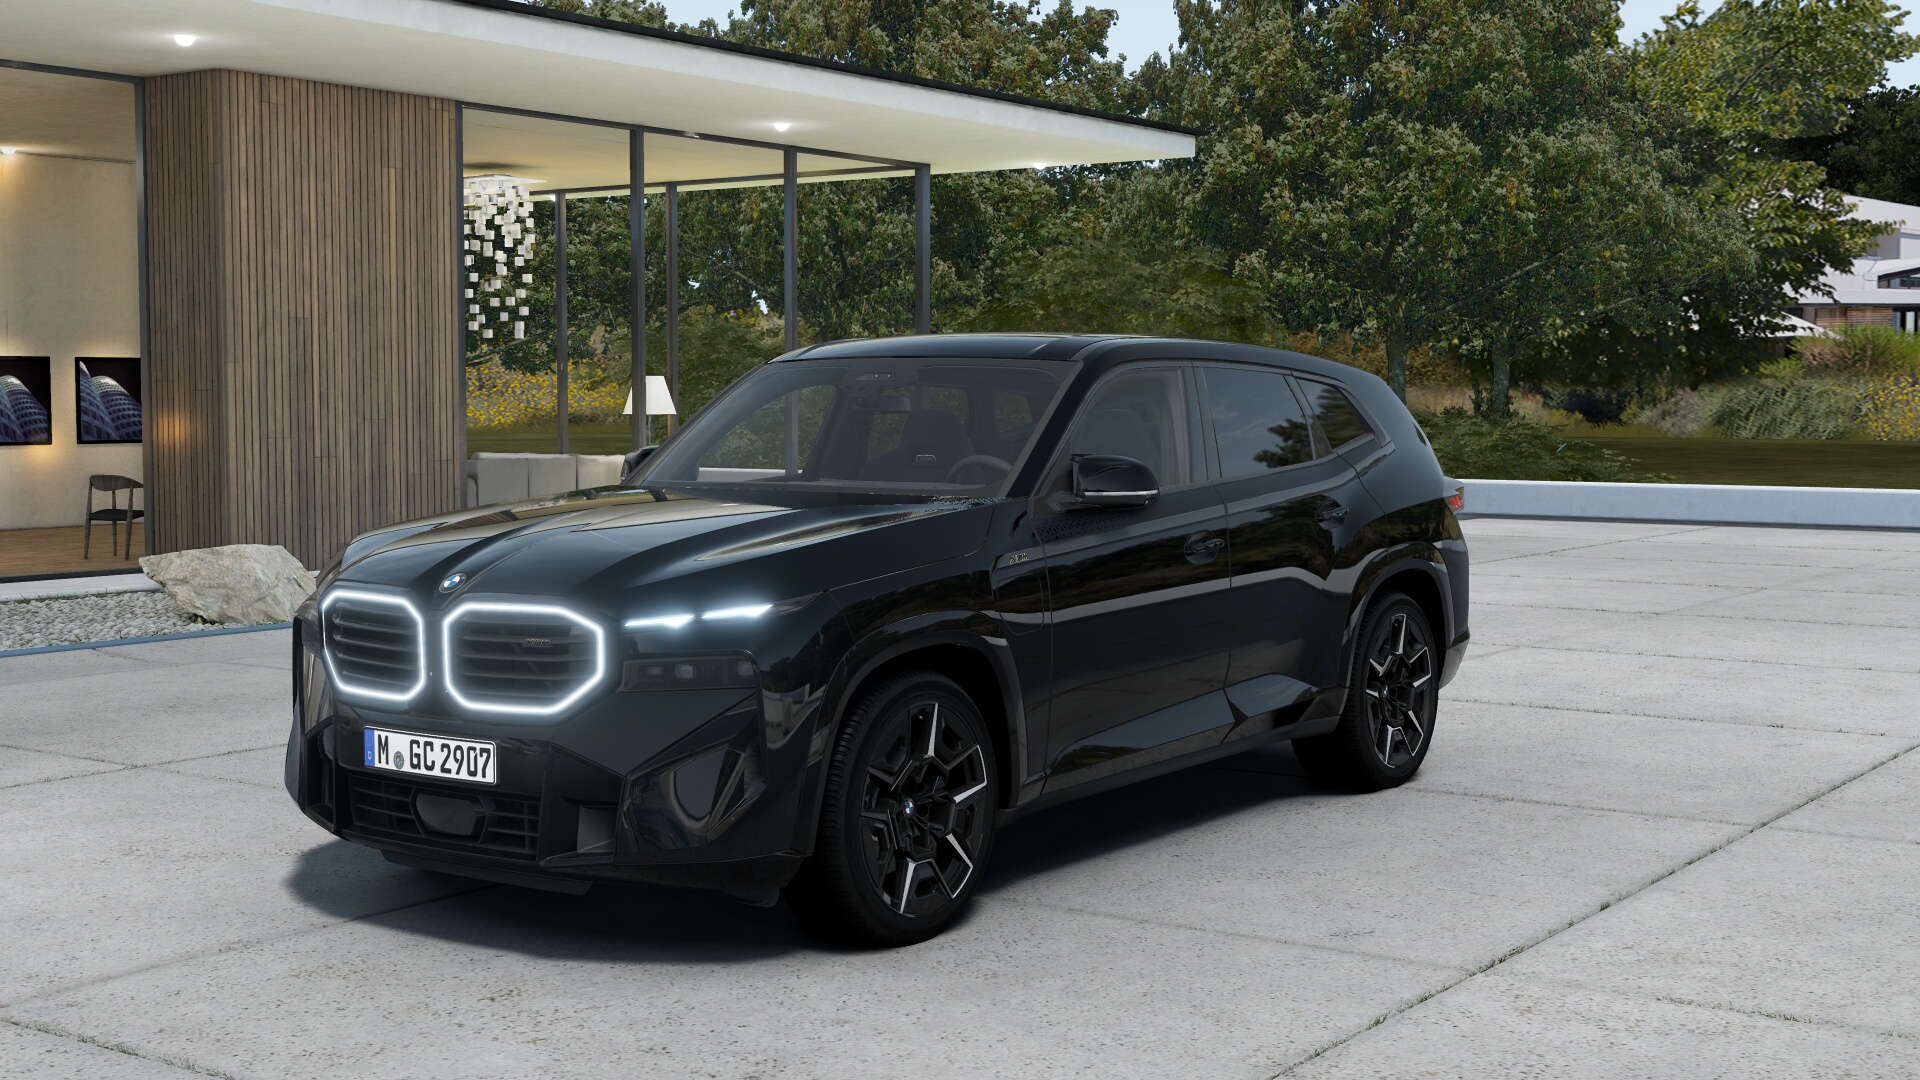 BMW XM | V8 biturbo hybrid 650 koní | nové auto ve výrobě | dodání září 2023 | černo-černá specifikace | maximální výbava | super cena | nákup online na AUTOiBUY.com